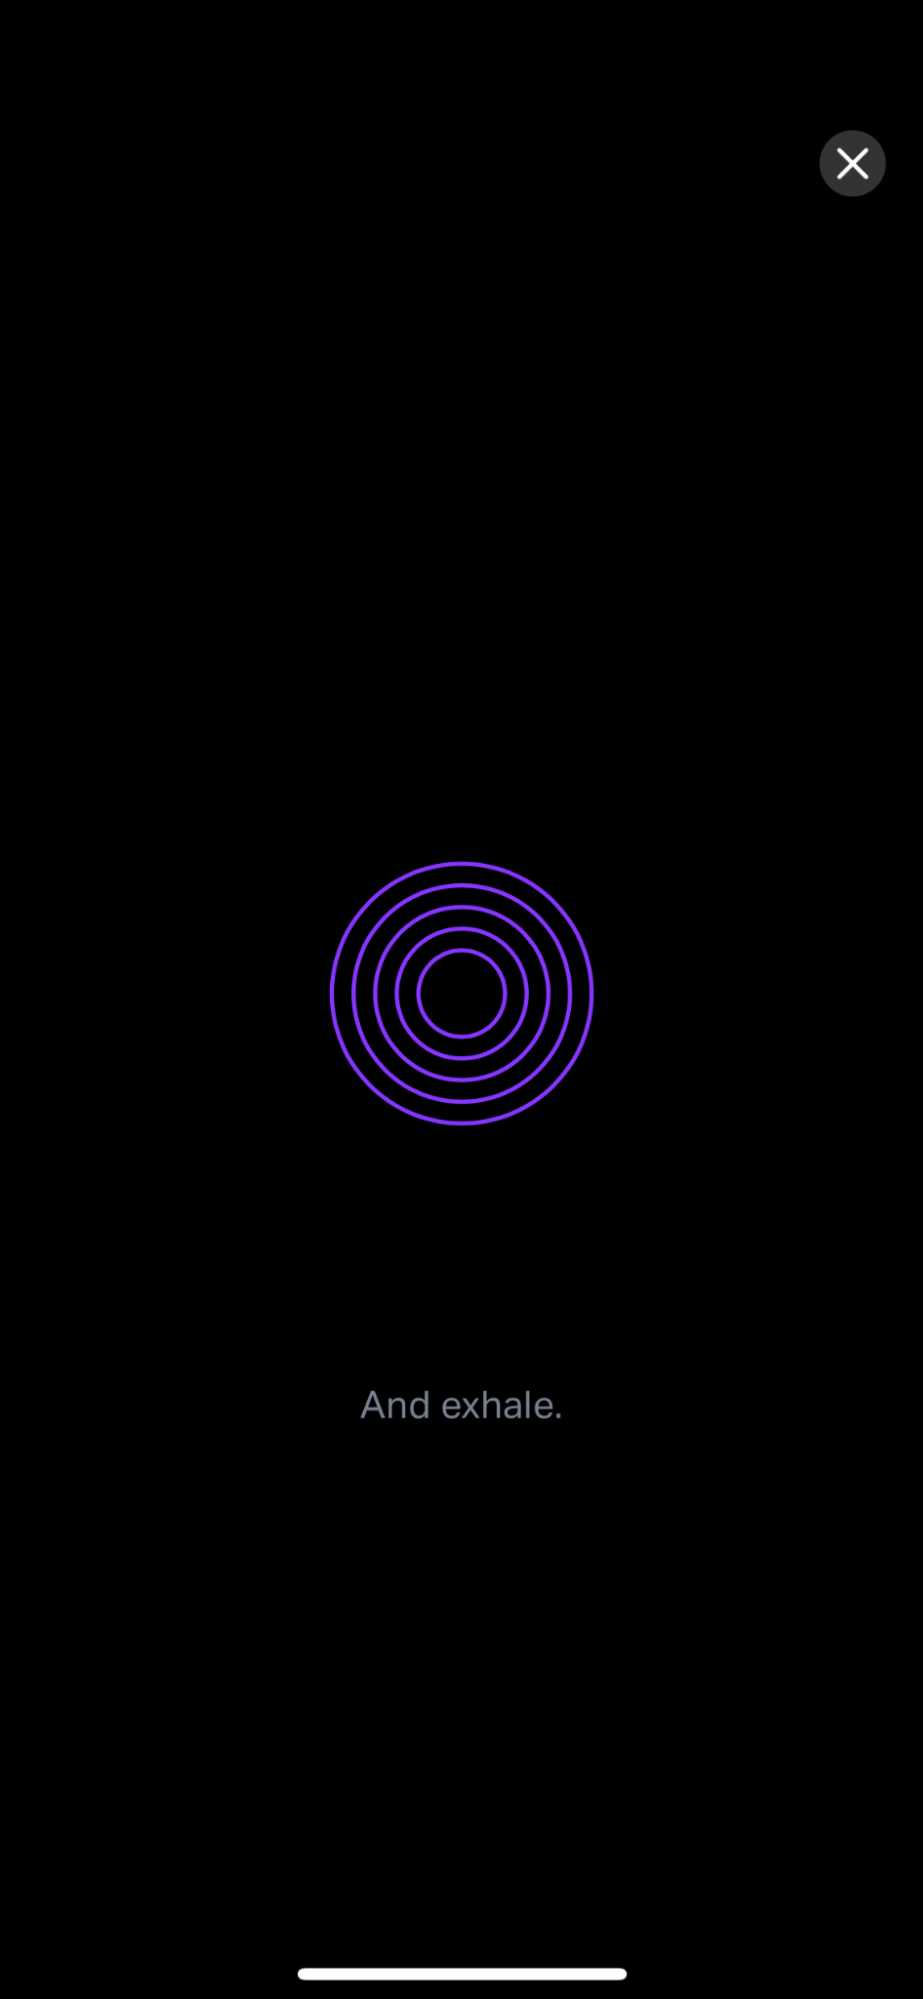 Screenshot of the app's breathwork prompts 